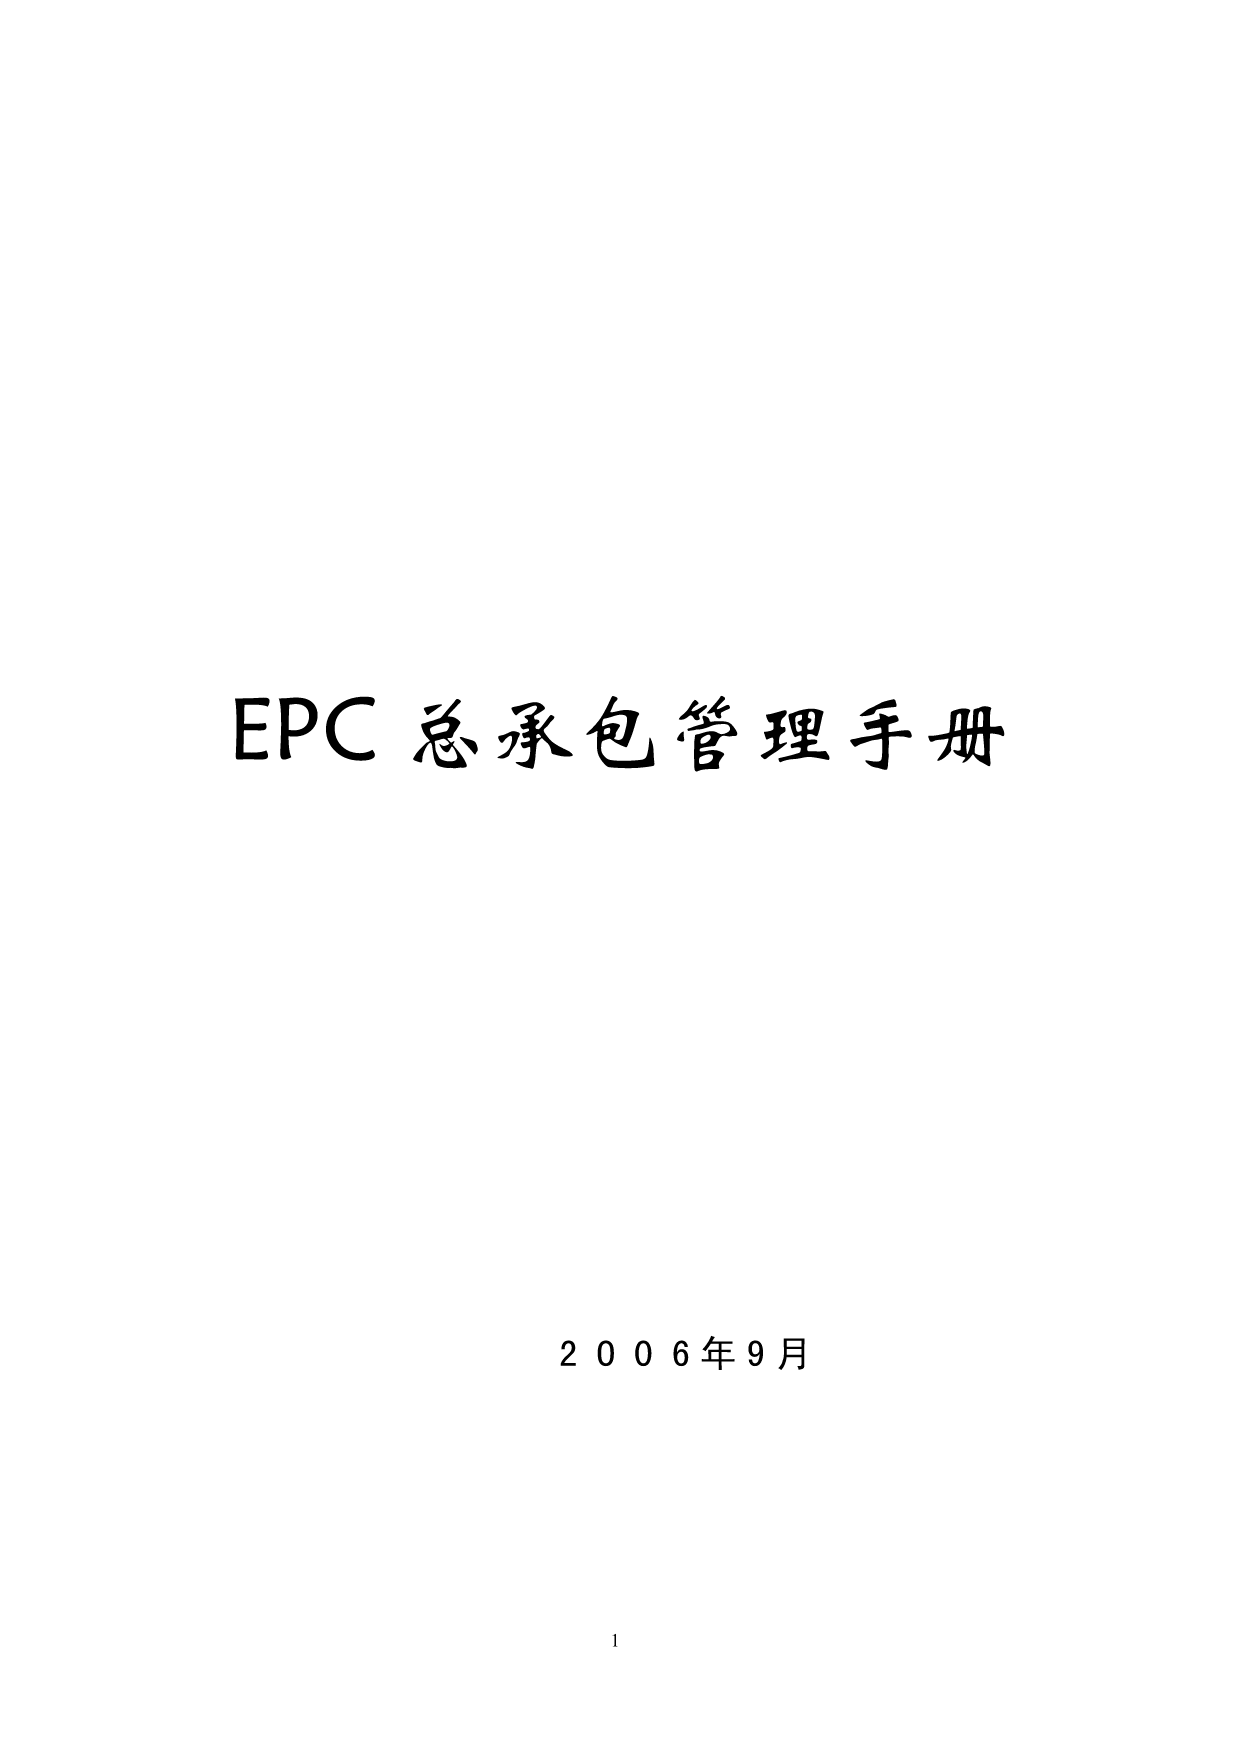 工程项目总承包(EPC)管理手册